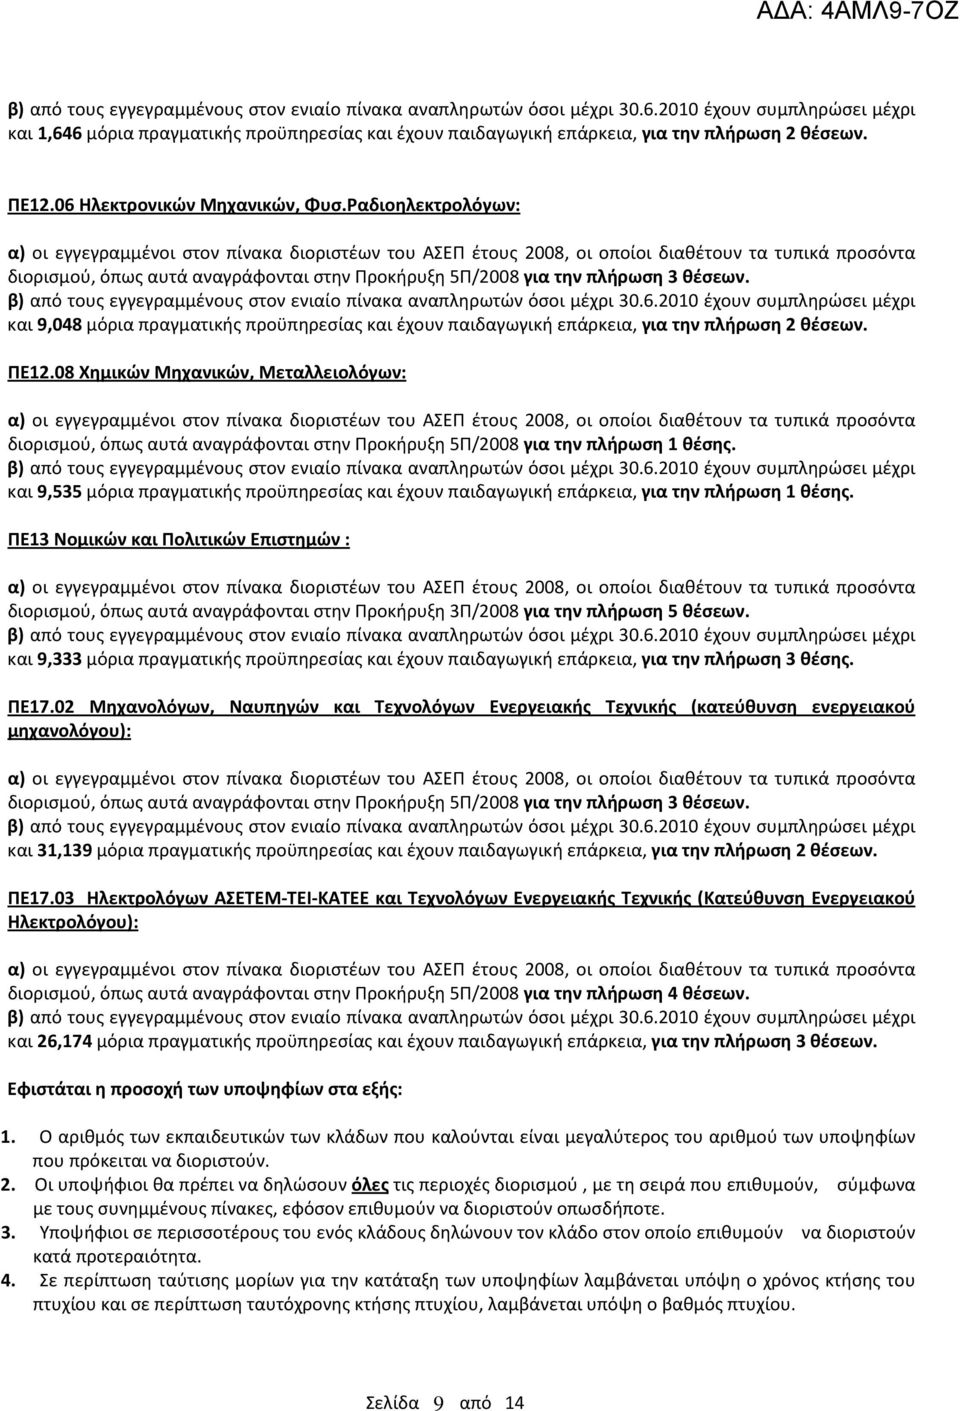 ΠΕ12.08 Χημικών Μηχανικών, Μεταλλειολόγων: διορισμού, όπως αυτά αναγράφονται στην Προκήρυξη 5Π/2008 για την πλήρωση 1 θέσης.